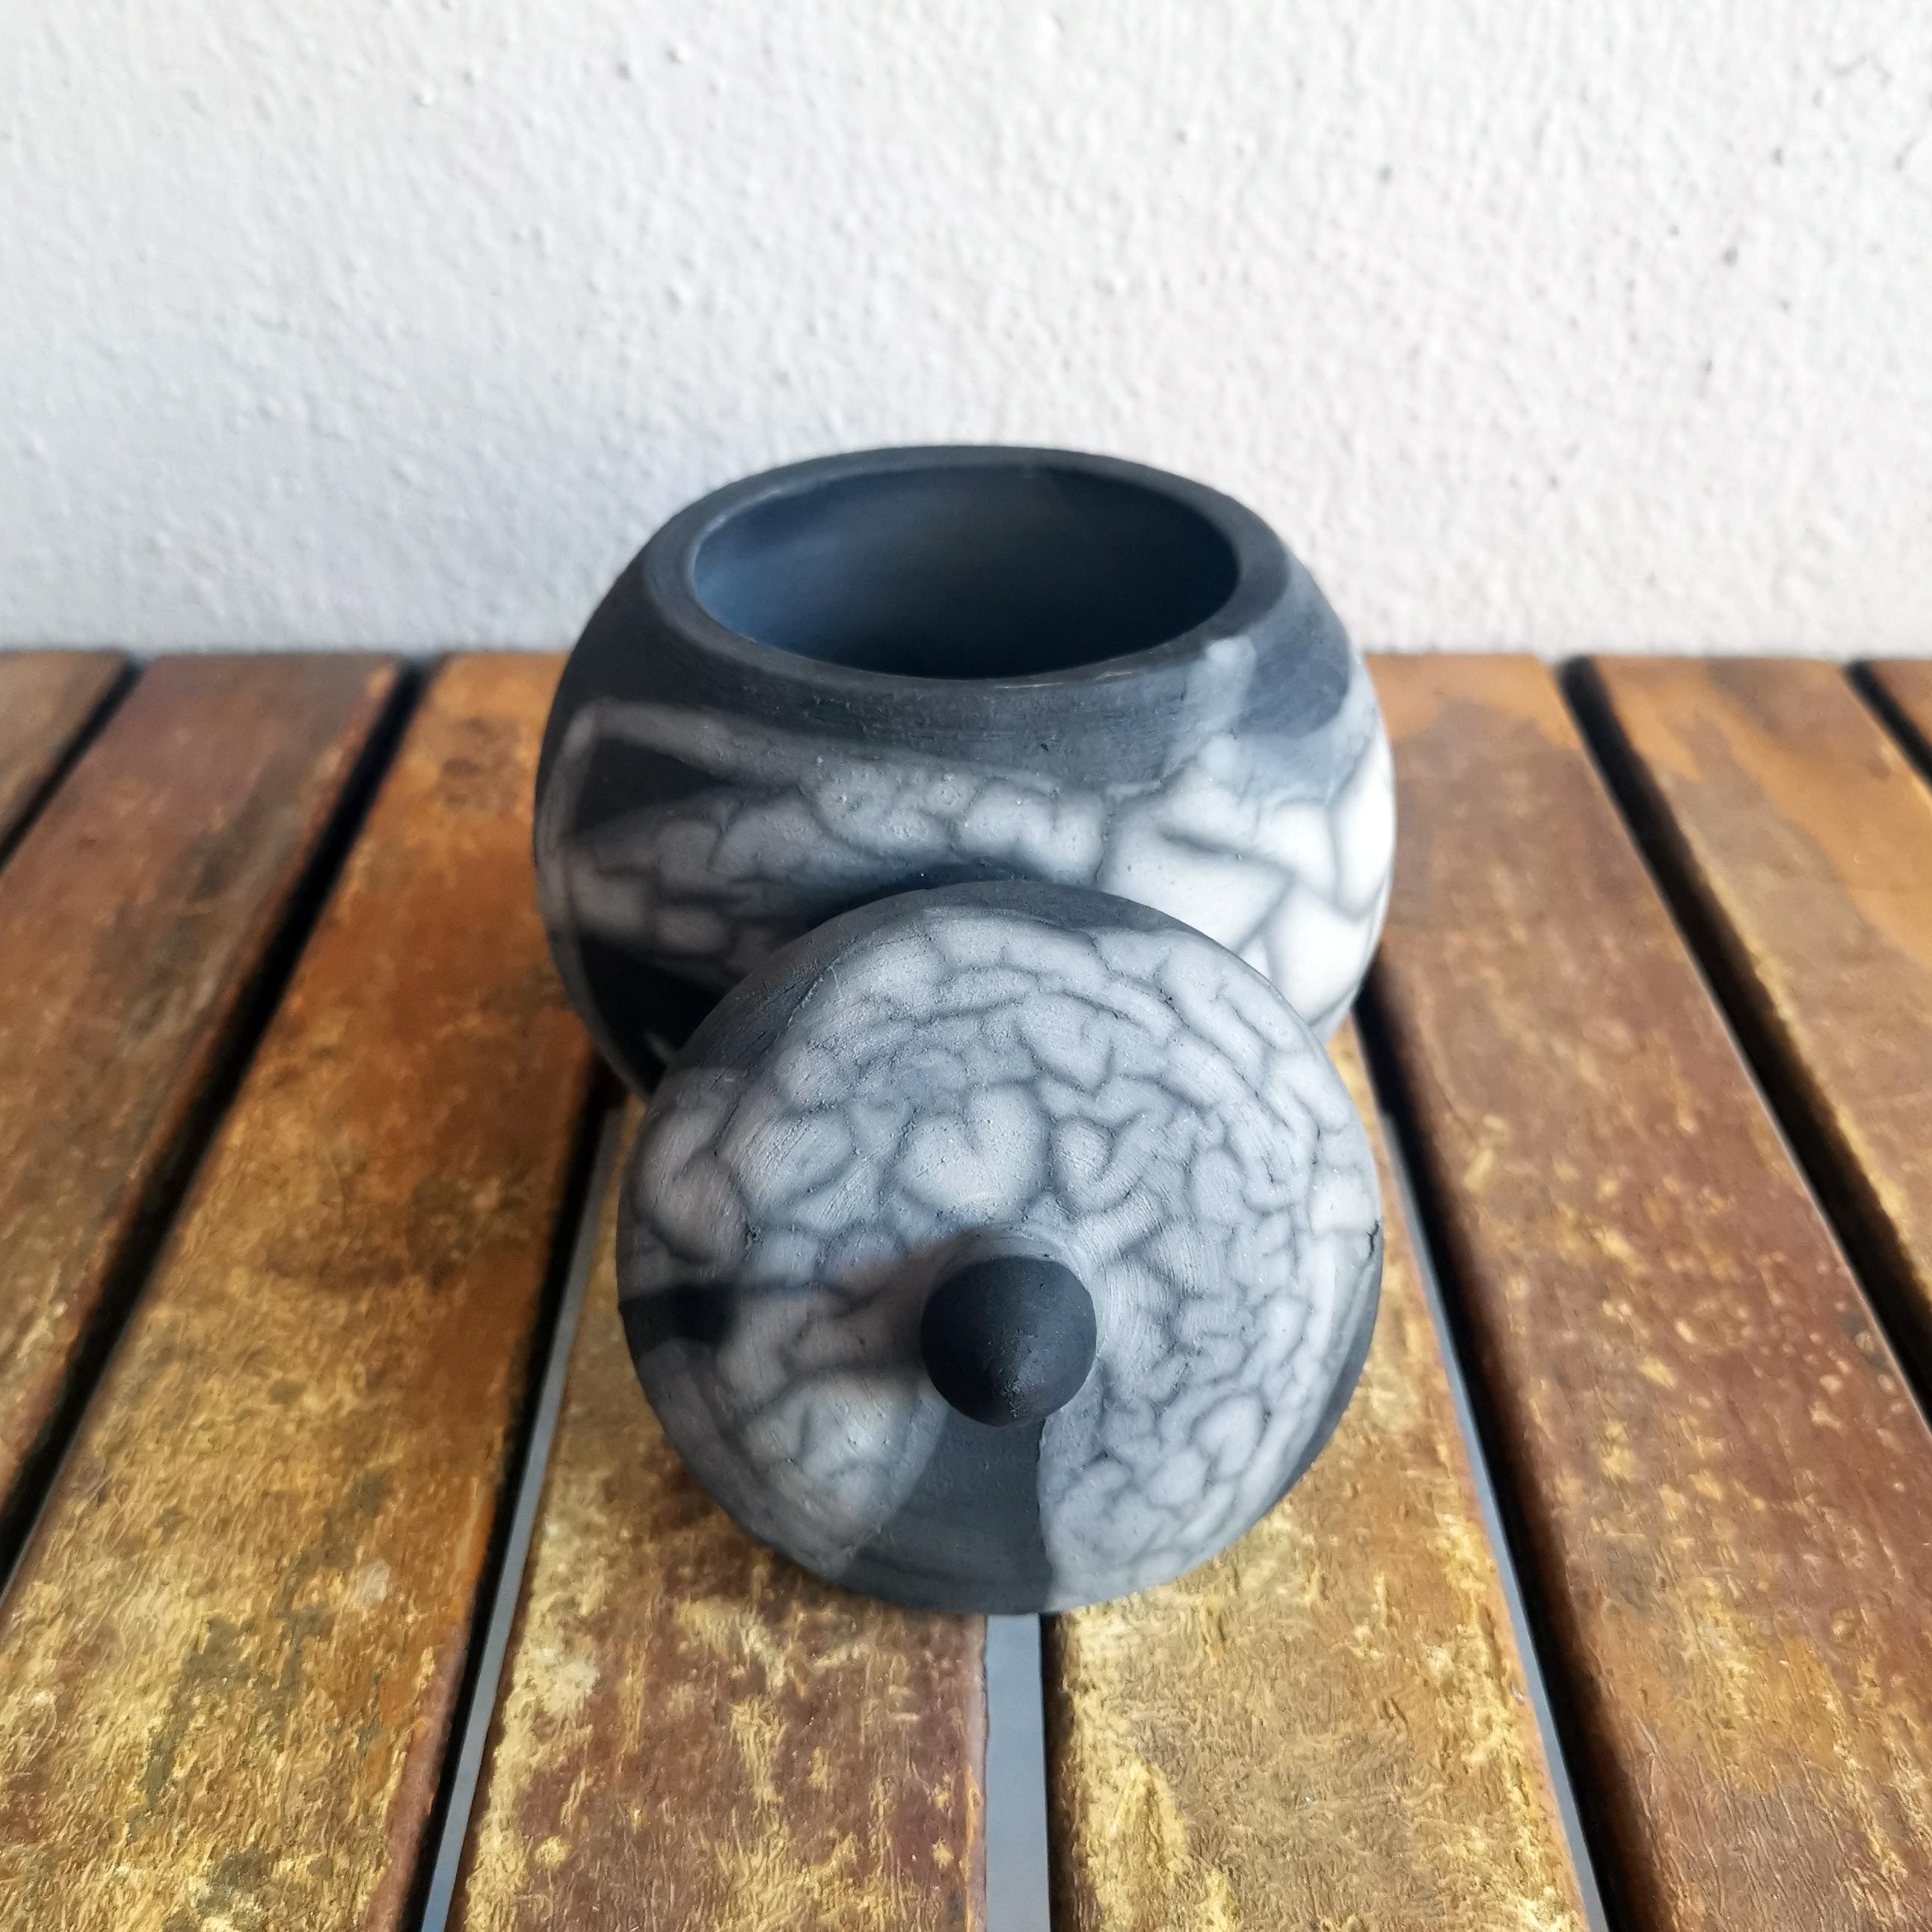 Malaysian Kioku Small Ceramic Urn, Smoked Raku, Ceramic Raku Pottery For Sale